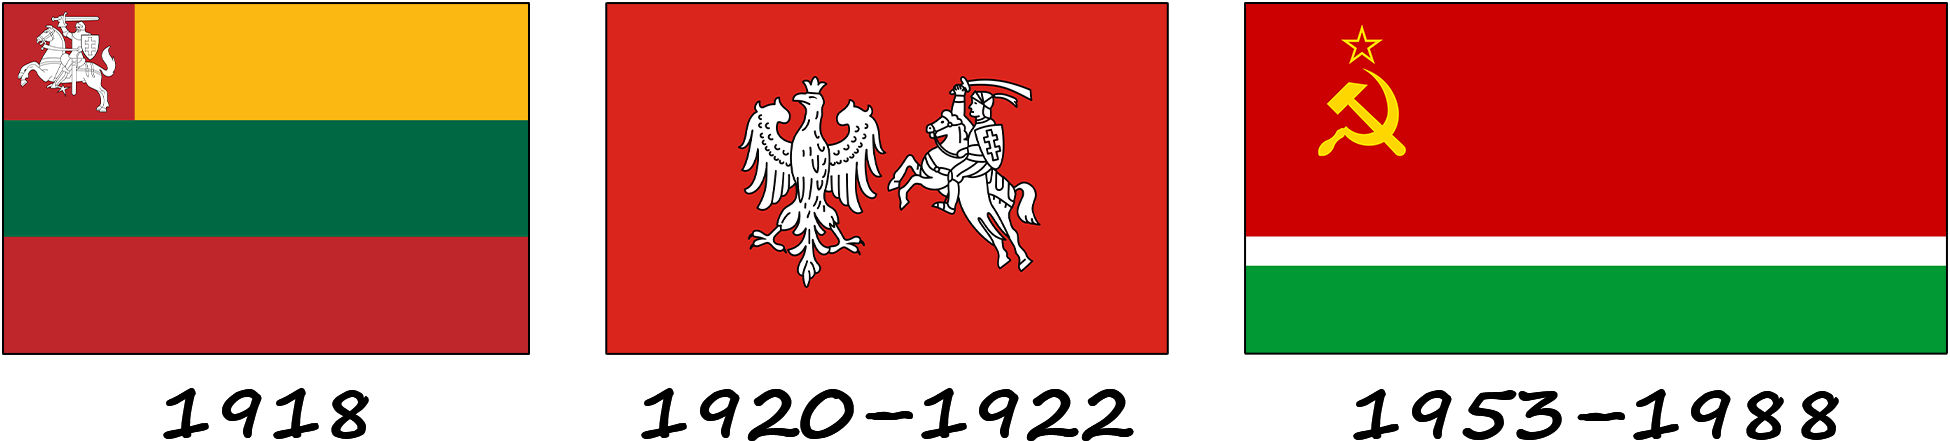 Histoire du drapeau lituanien